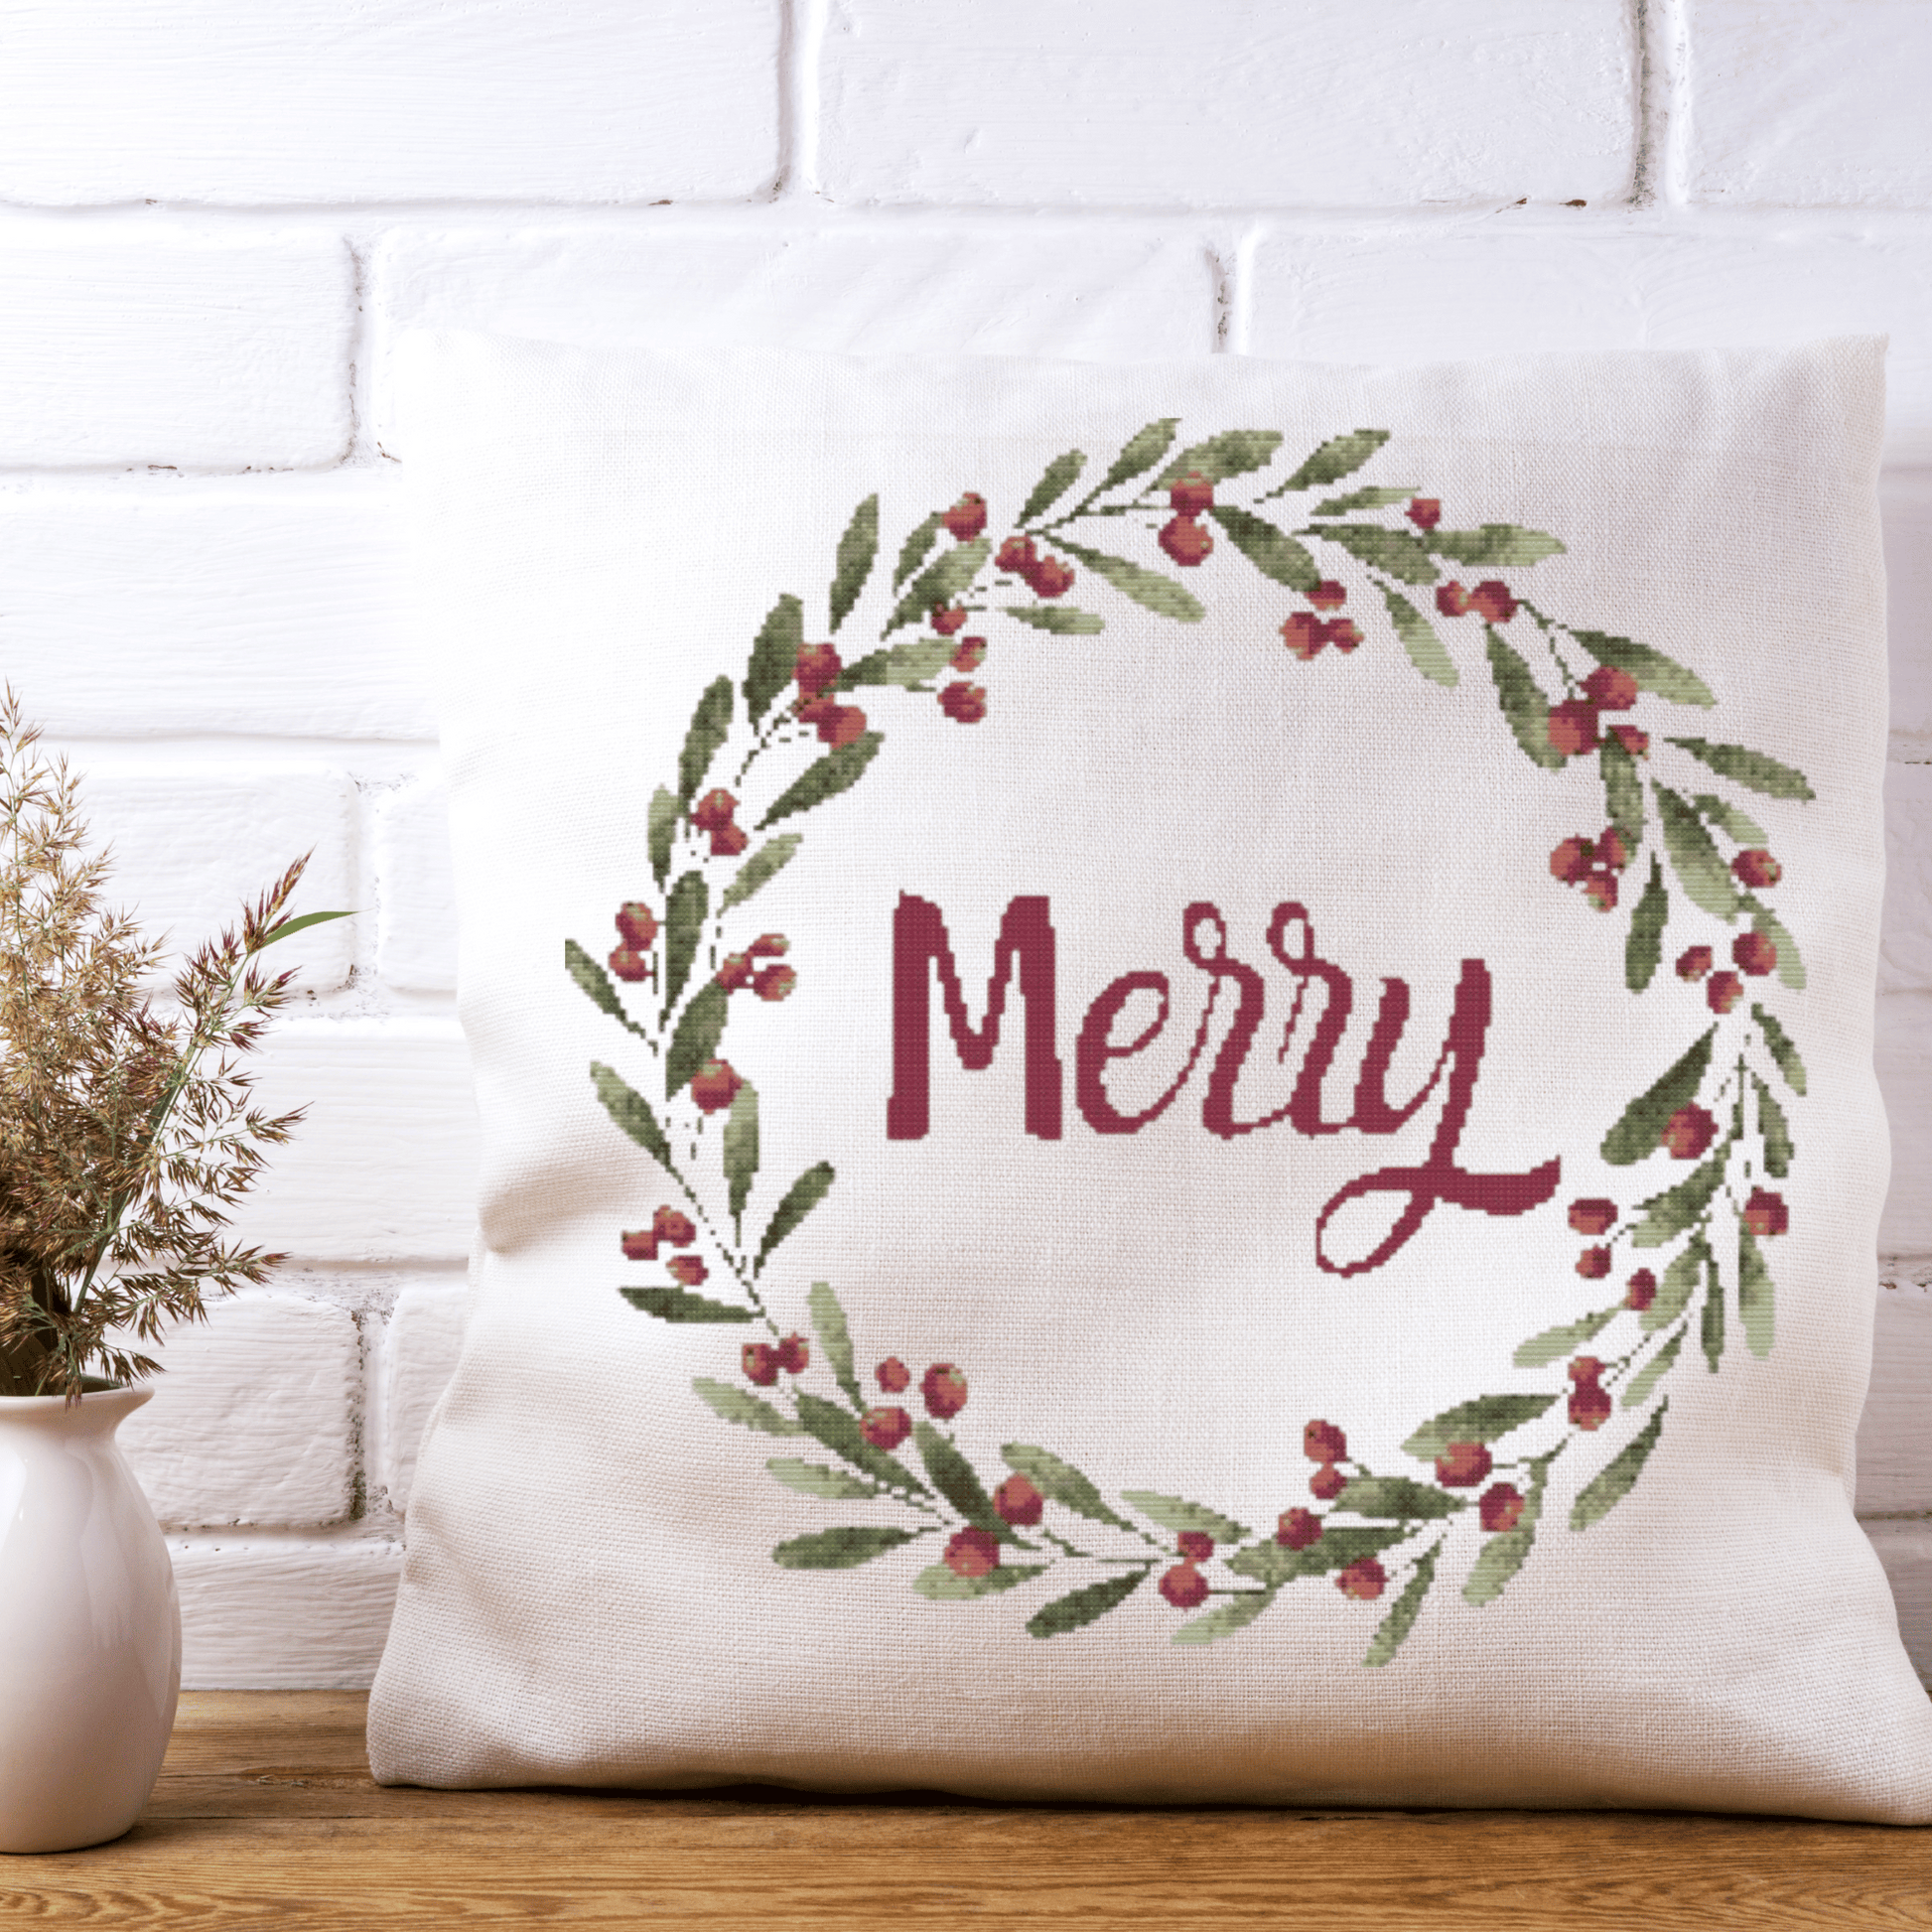 Merry Christmas Wreath Cross Stitch Pattern | Christmas Wreath Cross Stitch Chart | Christmas Cross Stitch Pattern